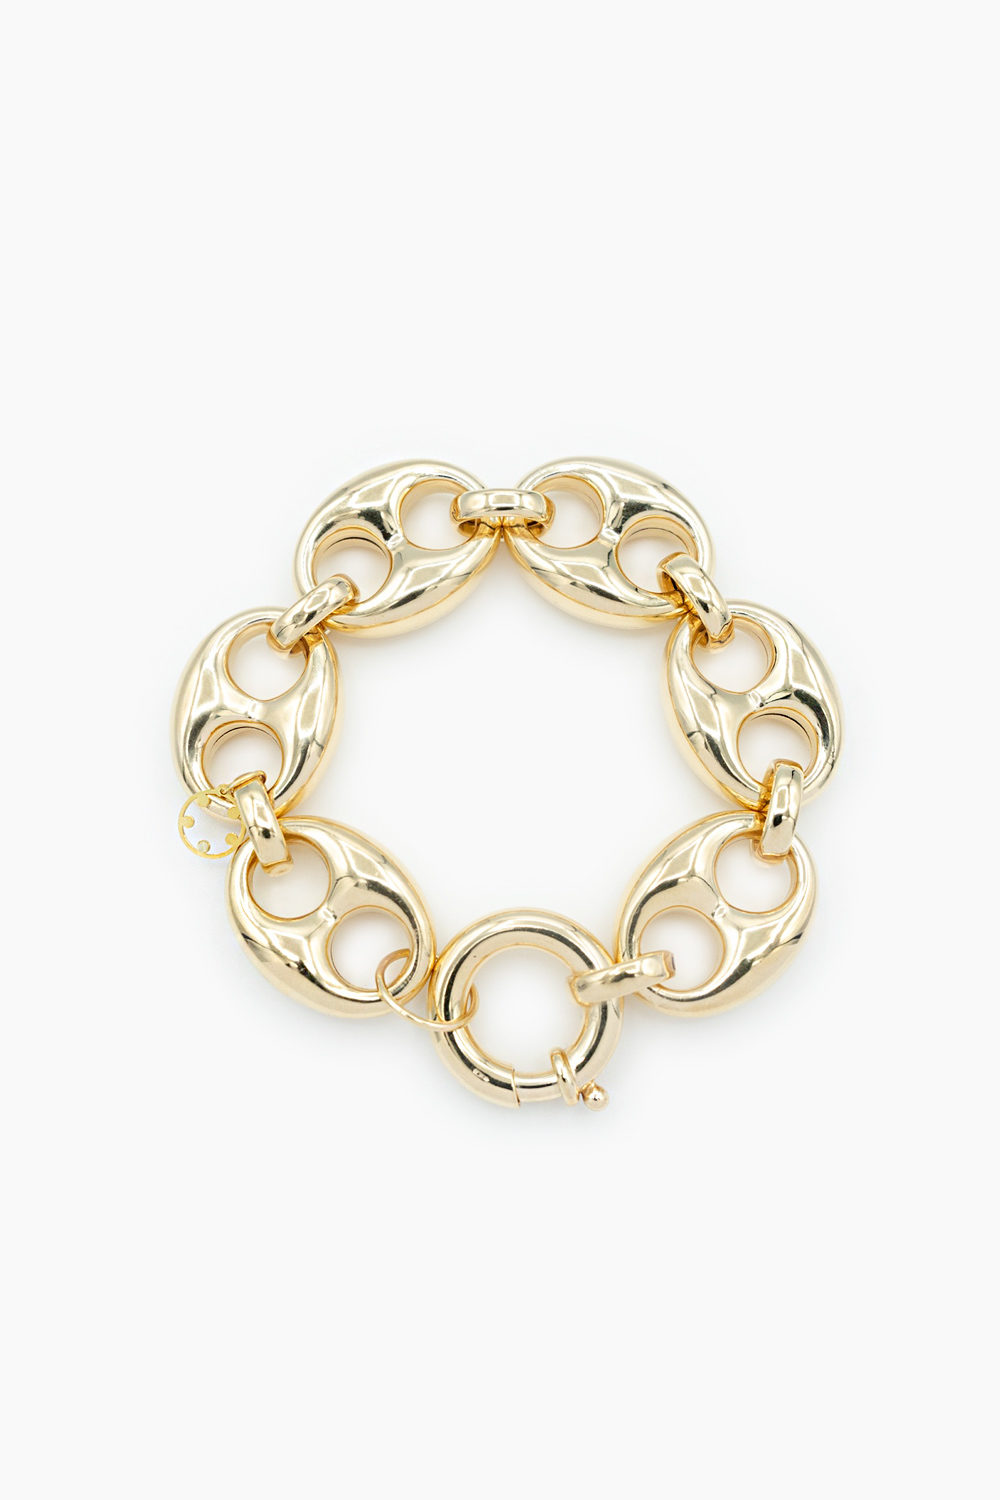 Jewellery Concept Design: Pulseira Ouro